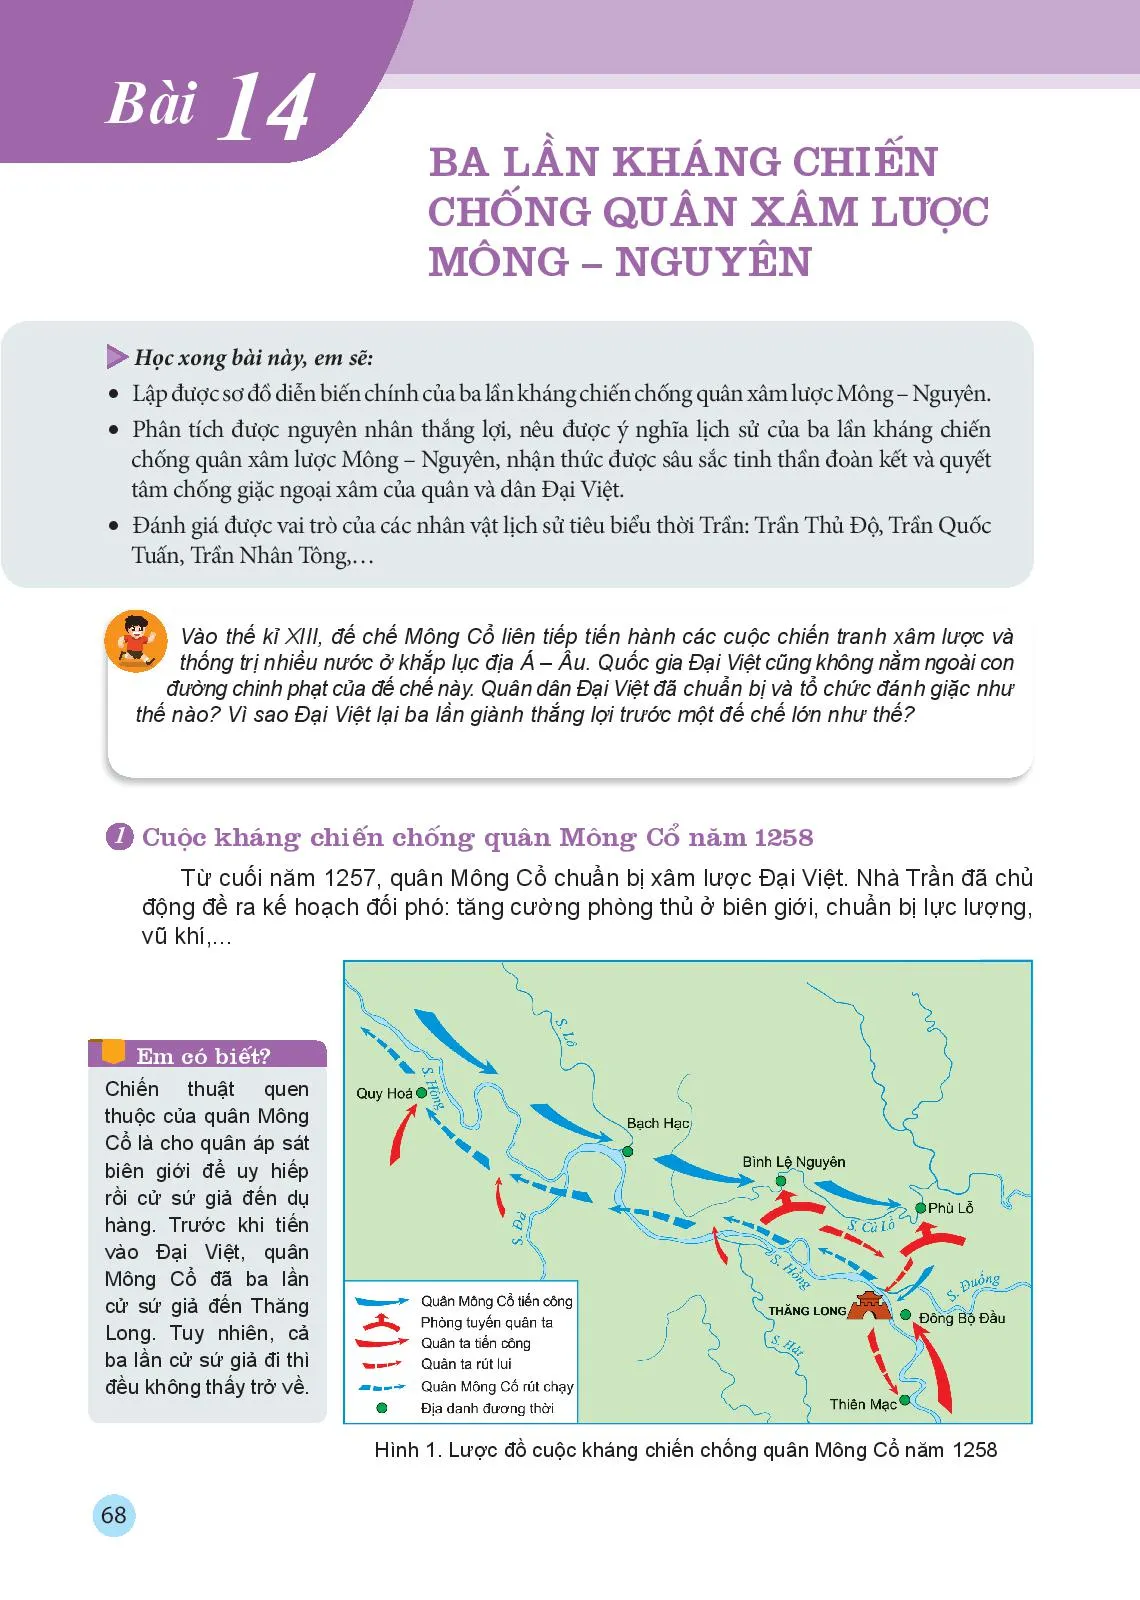 Bài 14 Ba lần kháng chiến chống quân xâm lược Mông – Nguyên